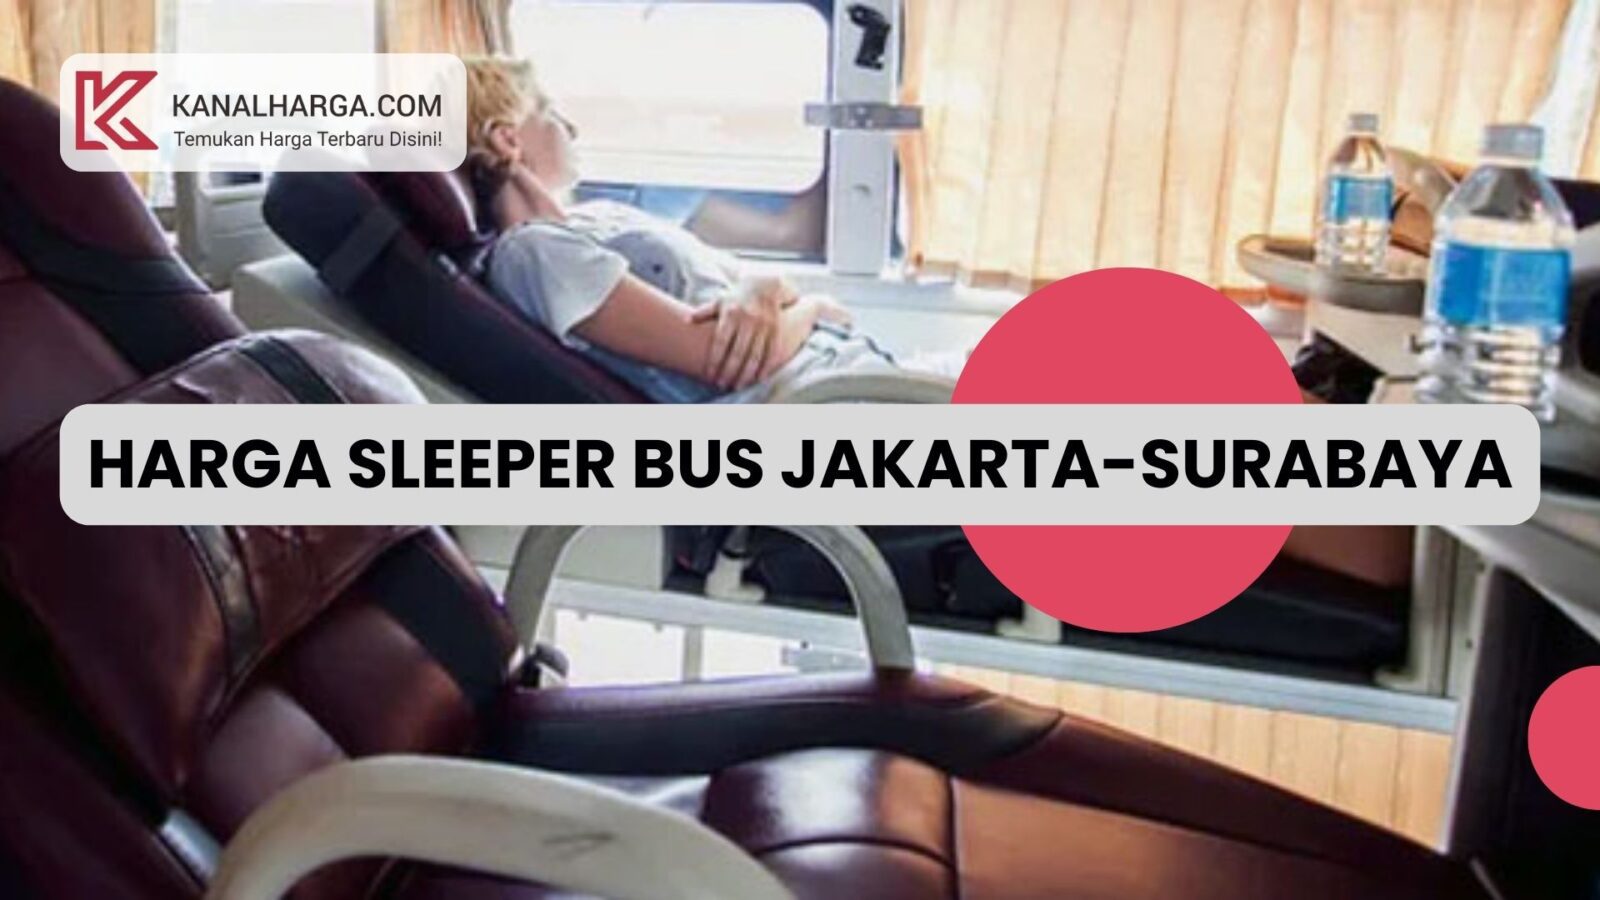 Harga Tiket Sleeper Bus Jakarta Surabaya dan Cara Pembayarannya Harga Tiket Sleeper Bus Jakarta-Surabaya